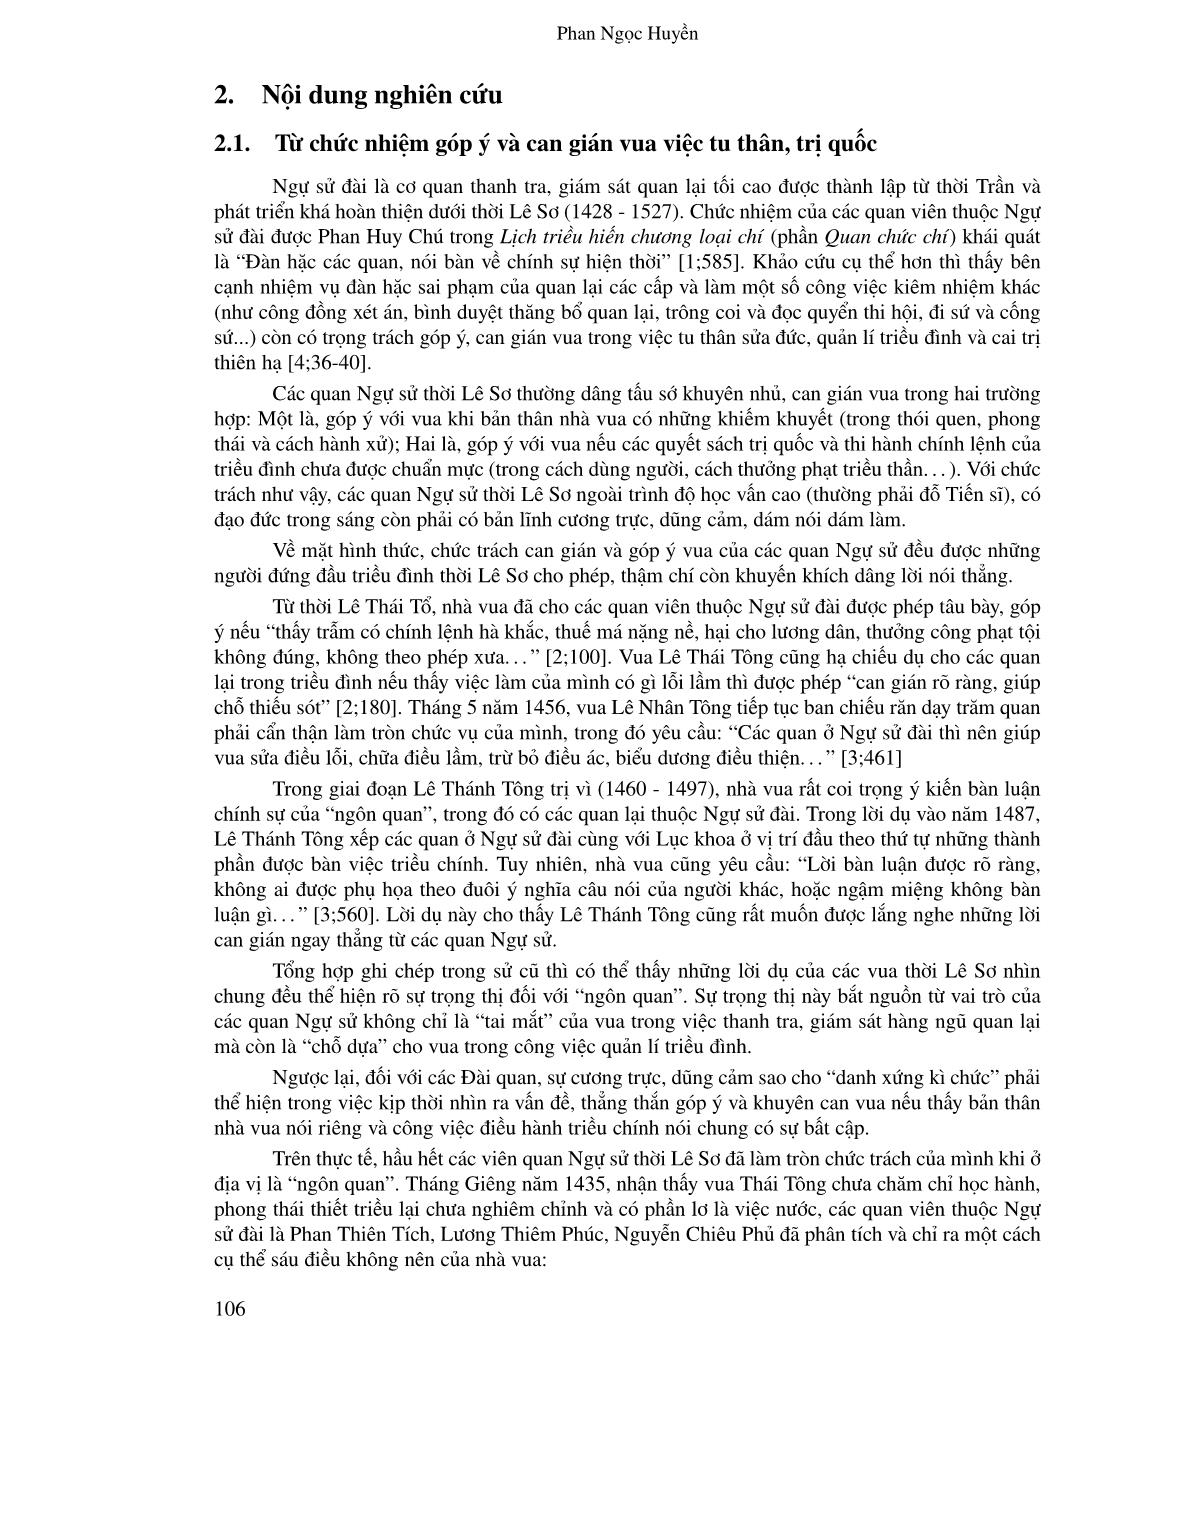 Số phận của “ngôn quan” thời Lê Sơ: Góc nhìn từ mối quan hệ giữa vua và chức quan ngự sử trang 2